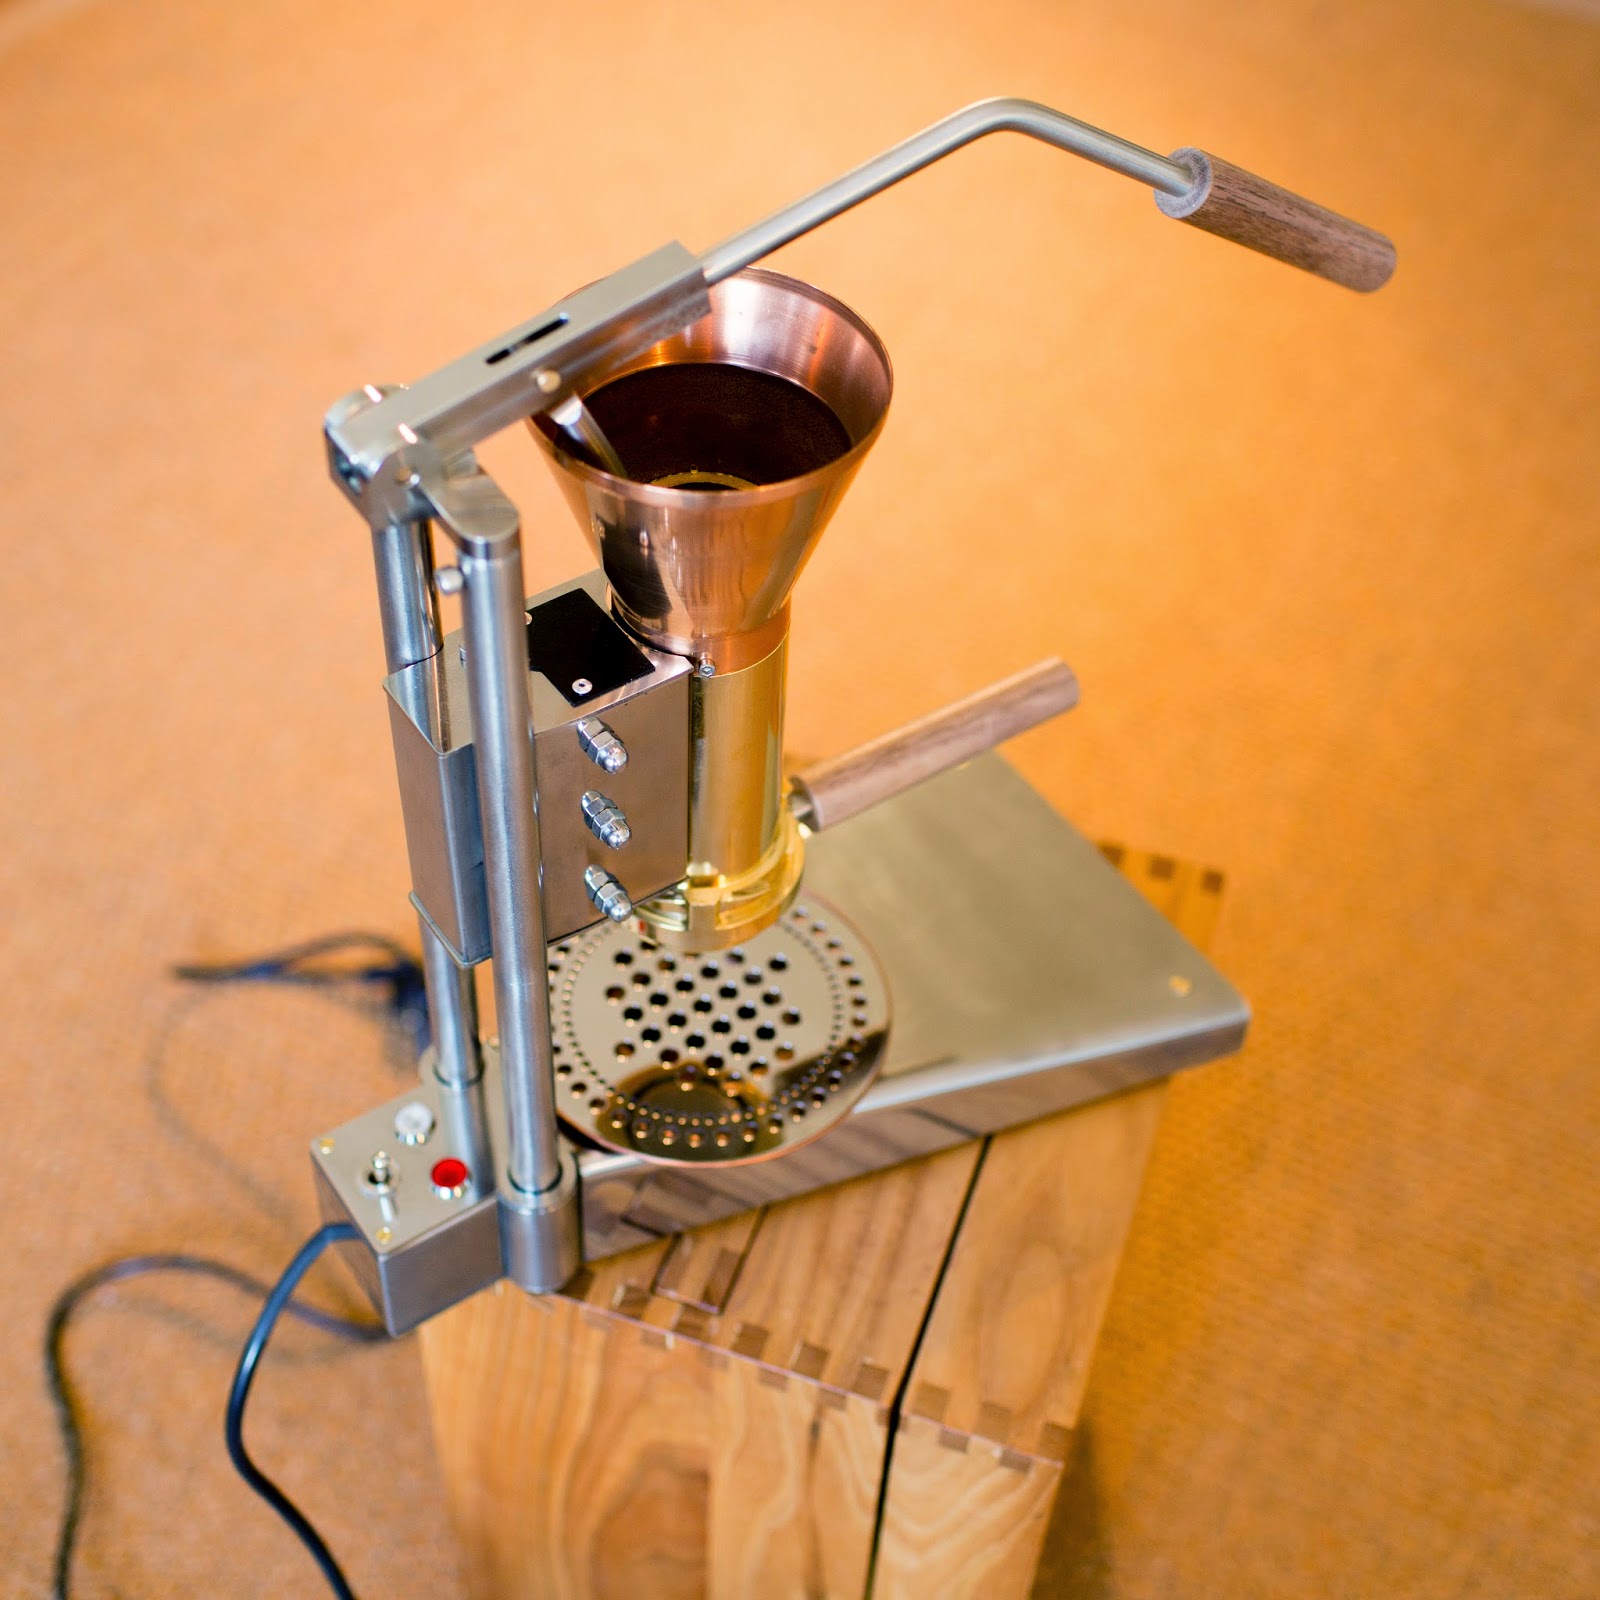 Strietman Espresso Machines